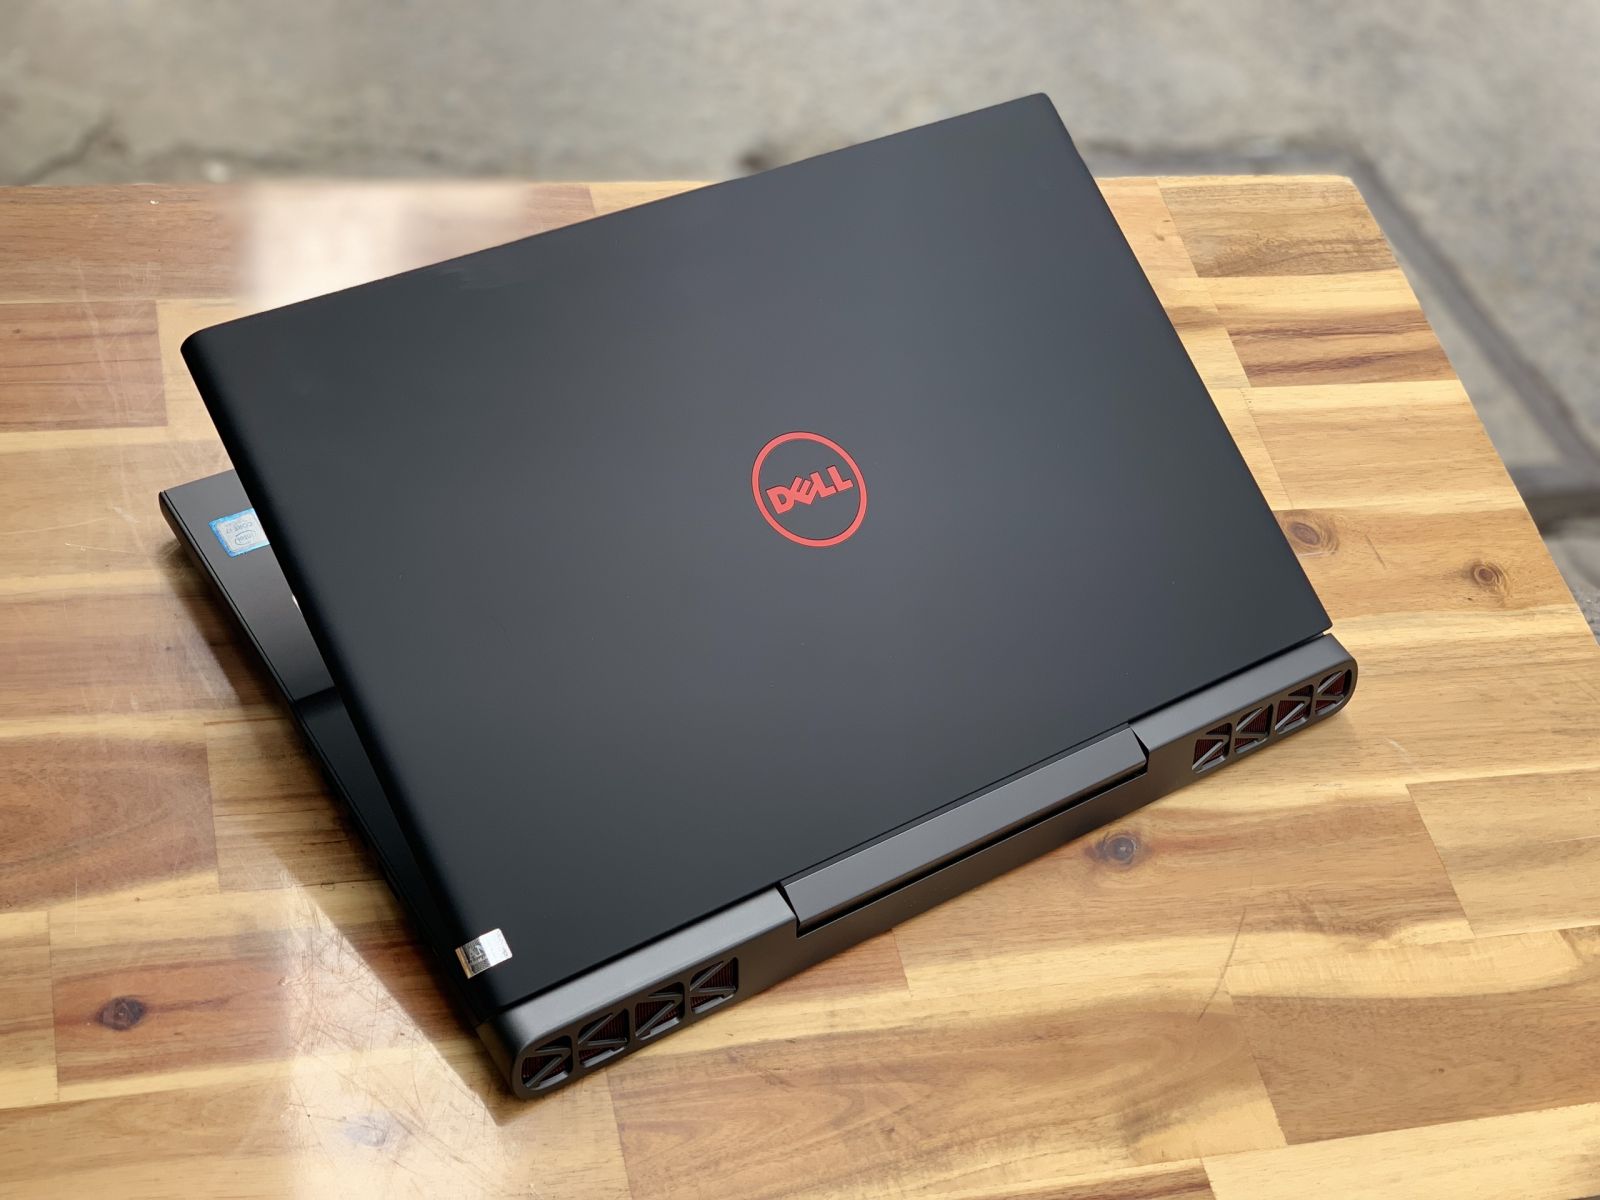 Laptop Dell Gaming 7567/ i5 7300HQ/ 8G/ SSD128+500G/ GTX1050 4G/ 15.6in/ Chuyên Game/ Giá rẻ